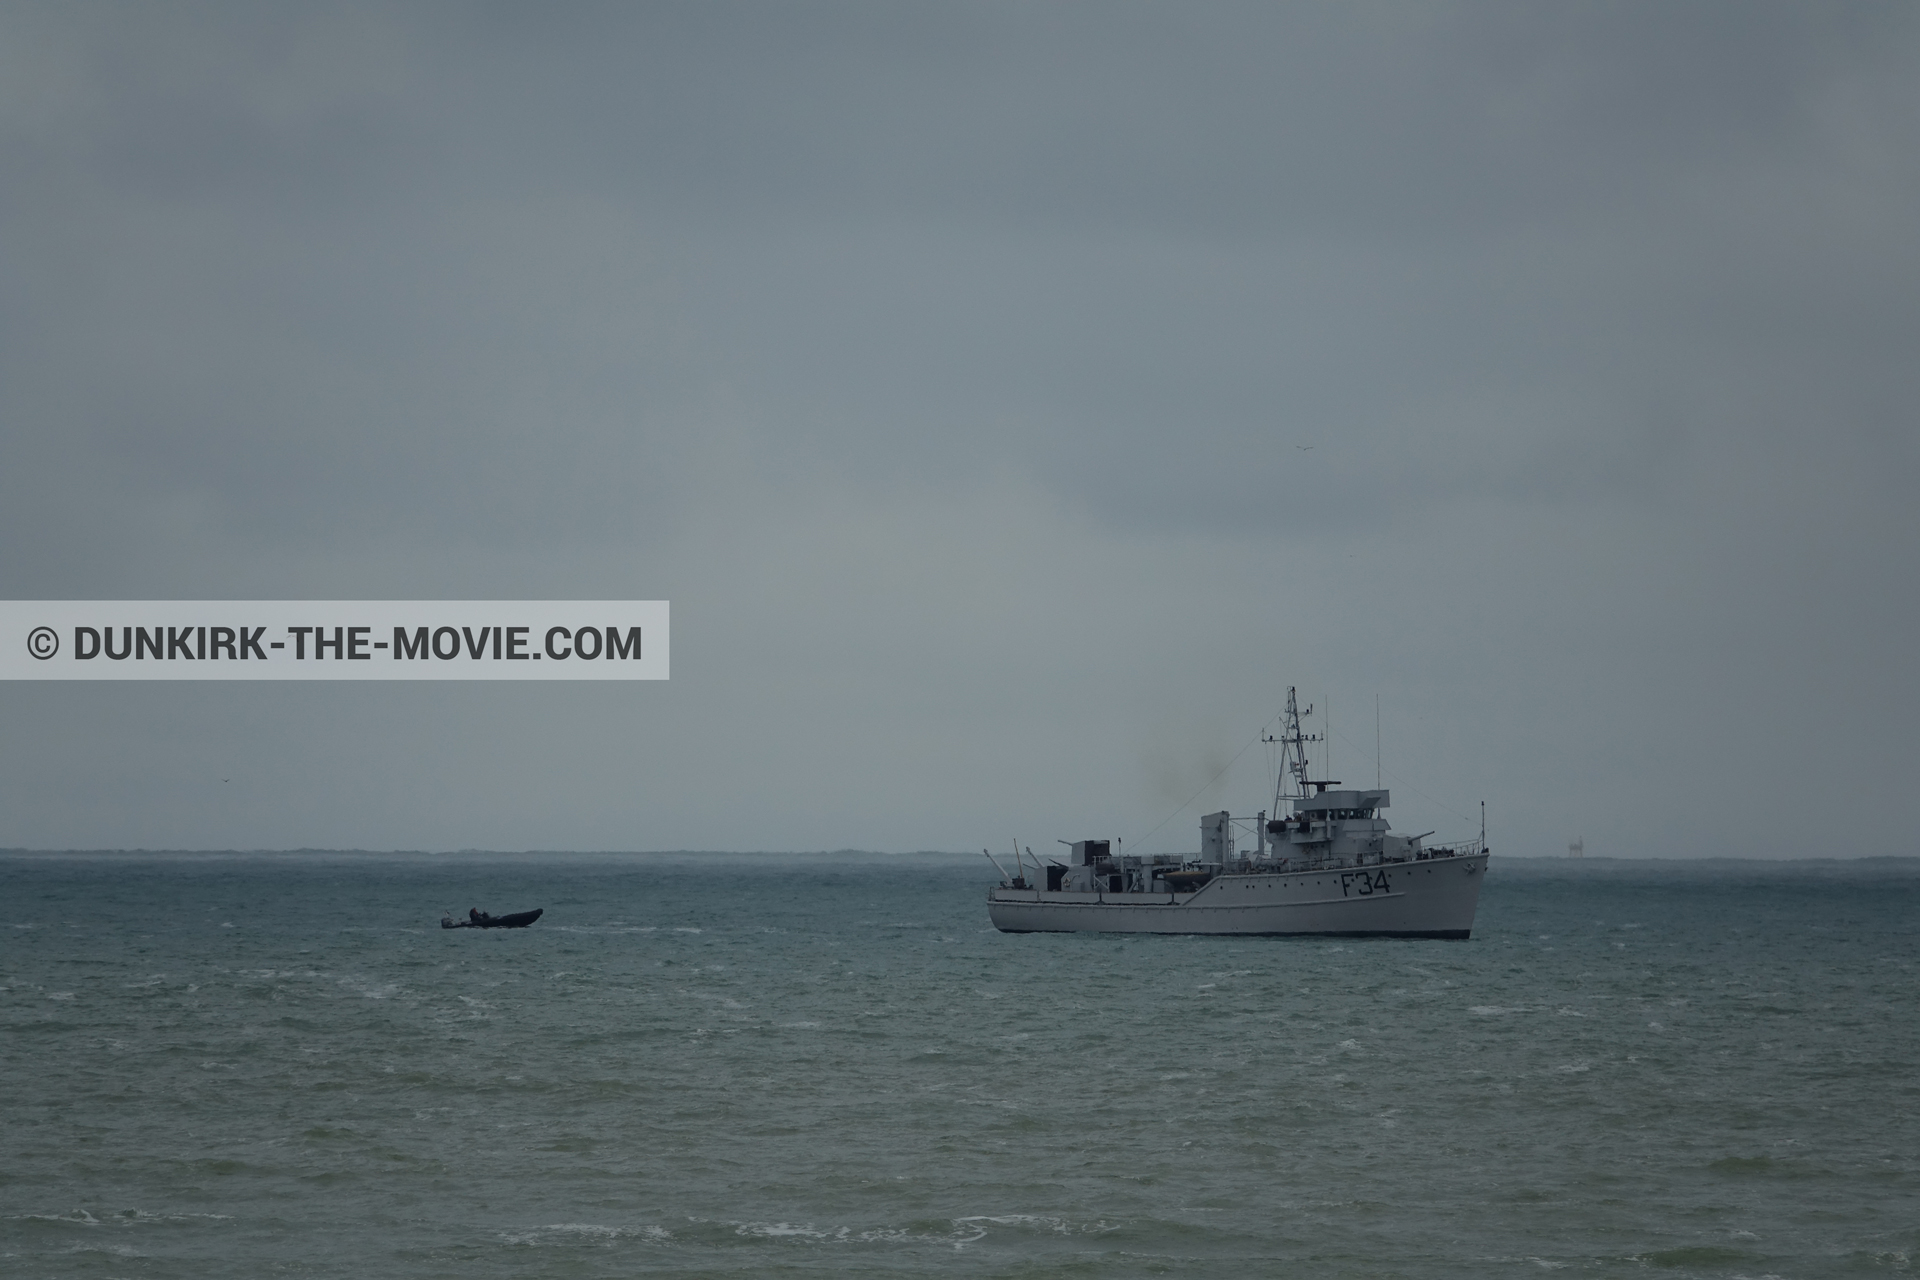 Fotos con barco, cielo gris, F34 - Hr.Ms. Sittard, mares calma,  durante el rodaje de la película Dunkerque de Nolan